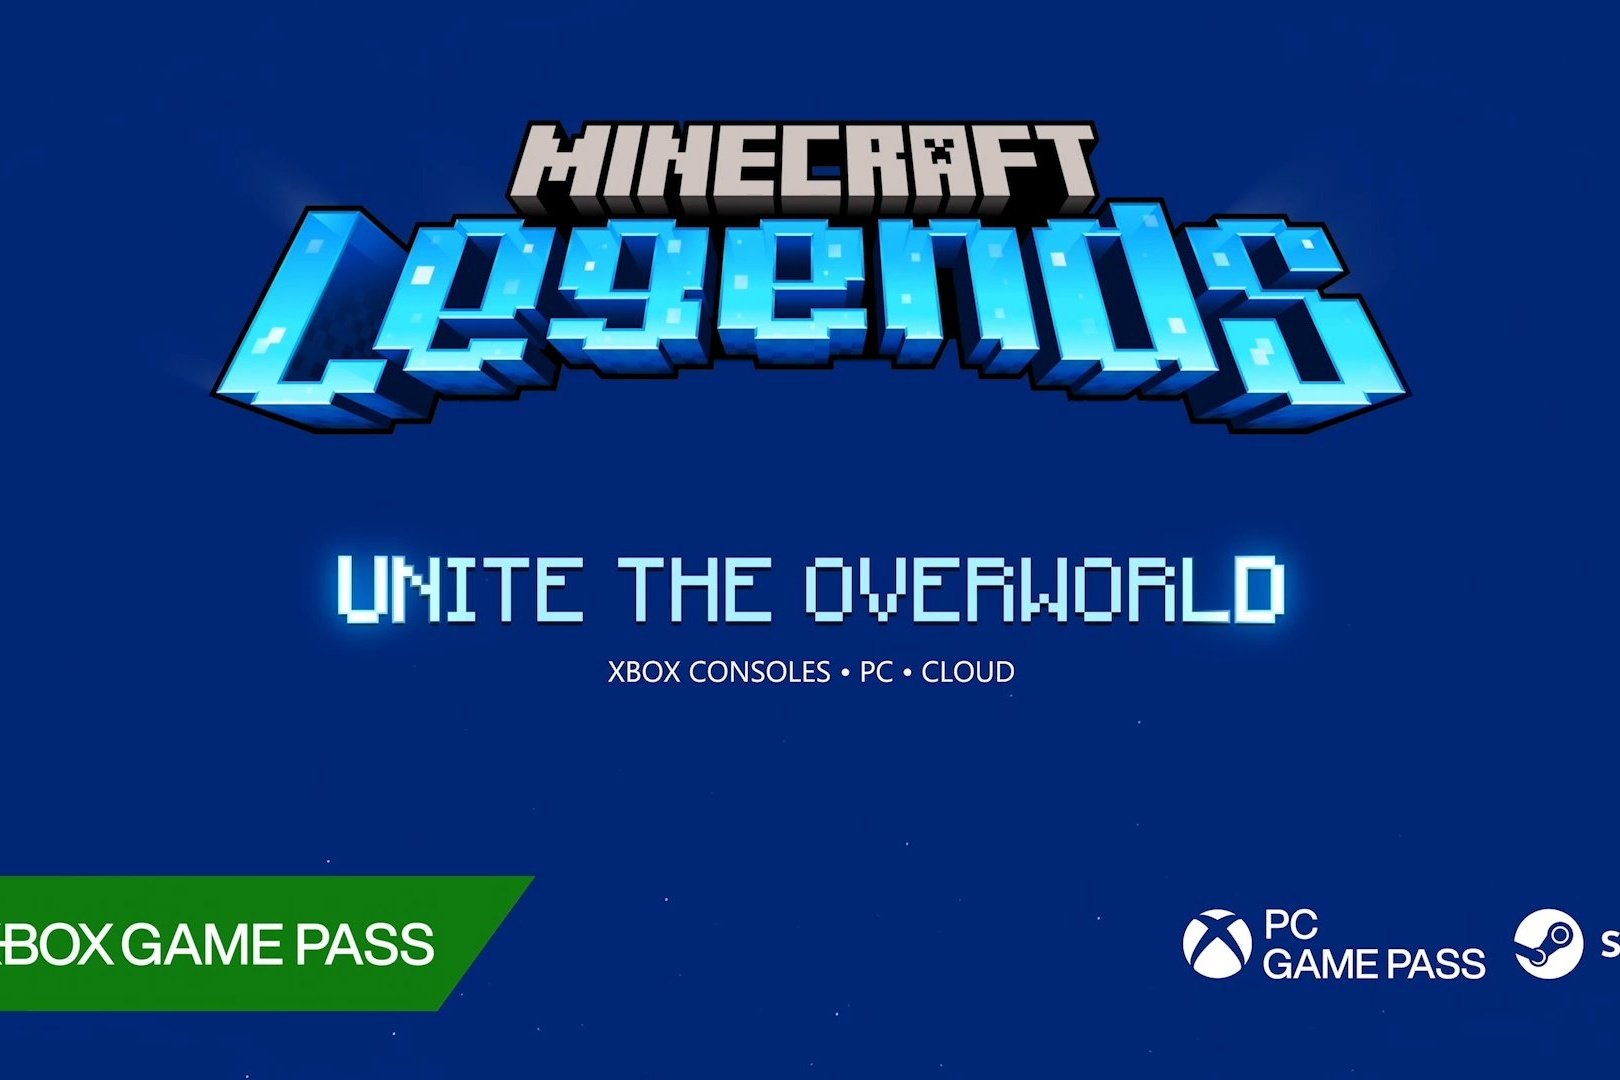 O que os fãs de Minecraft mais vão curtir ao jogar Minecraft Legends - Xbox  Wire em Português